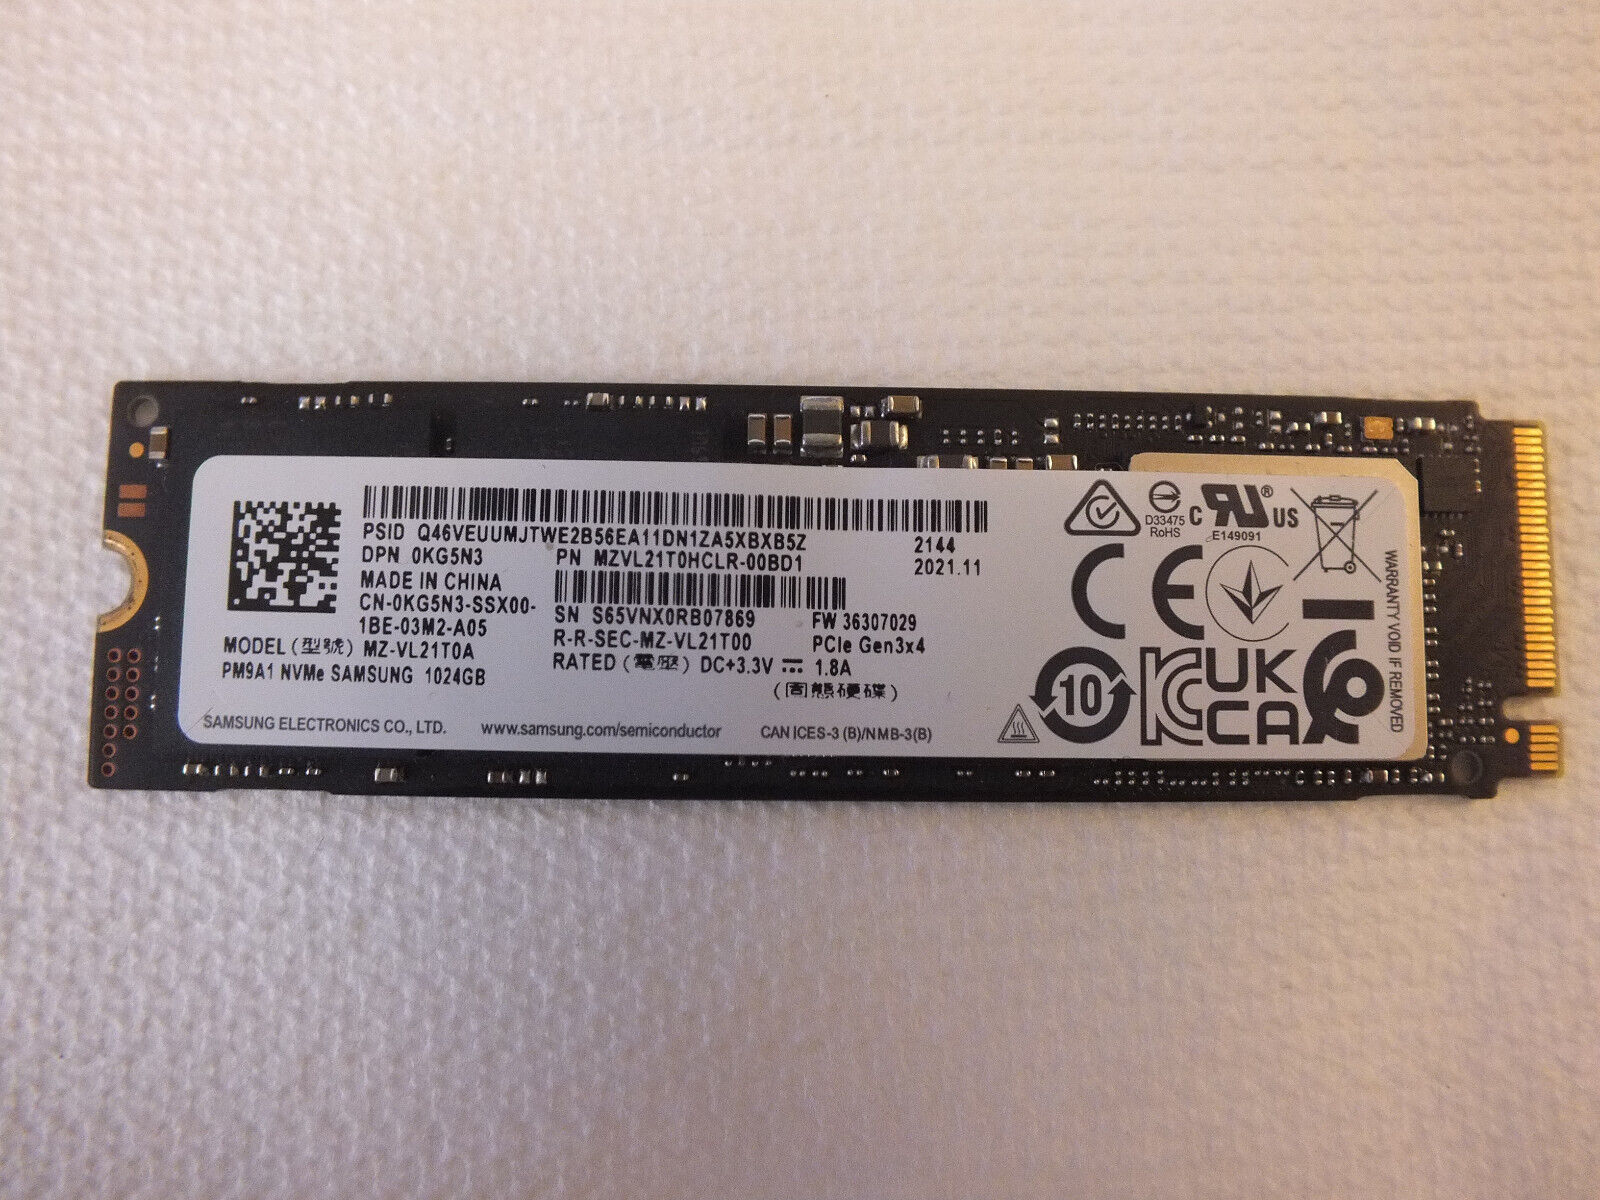 Samsung PM9A1 1TB PCIe Gen 3x4 SSD Drive (DELL OEM)